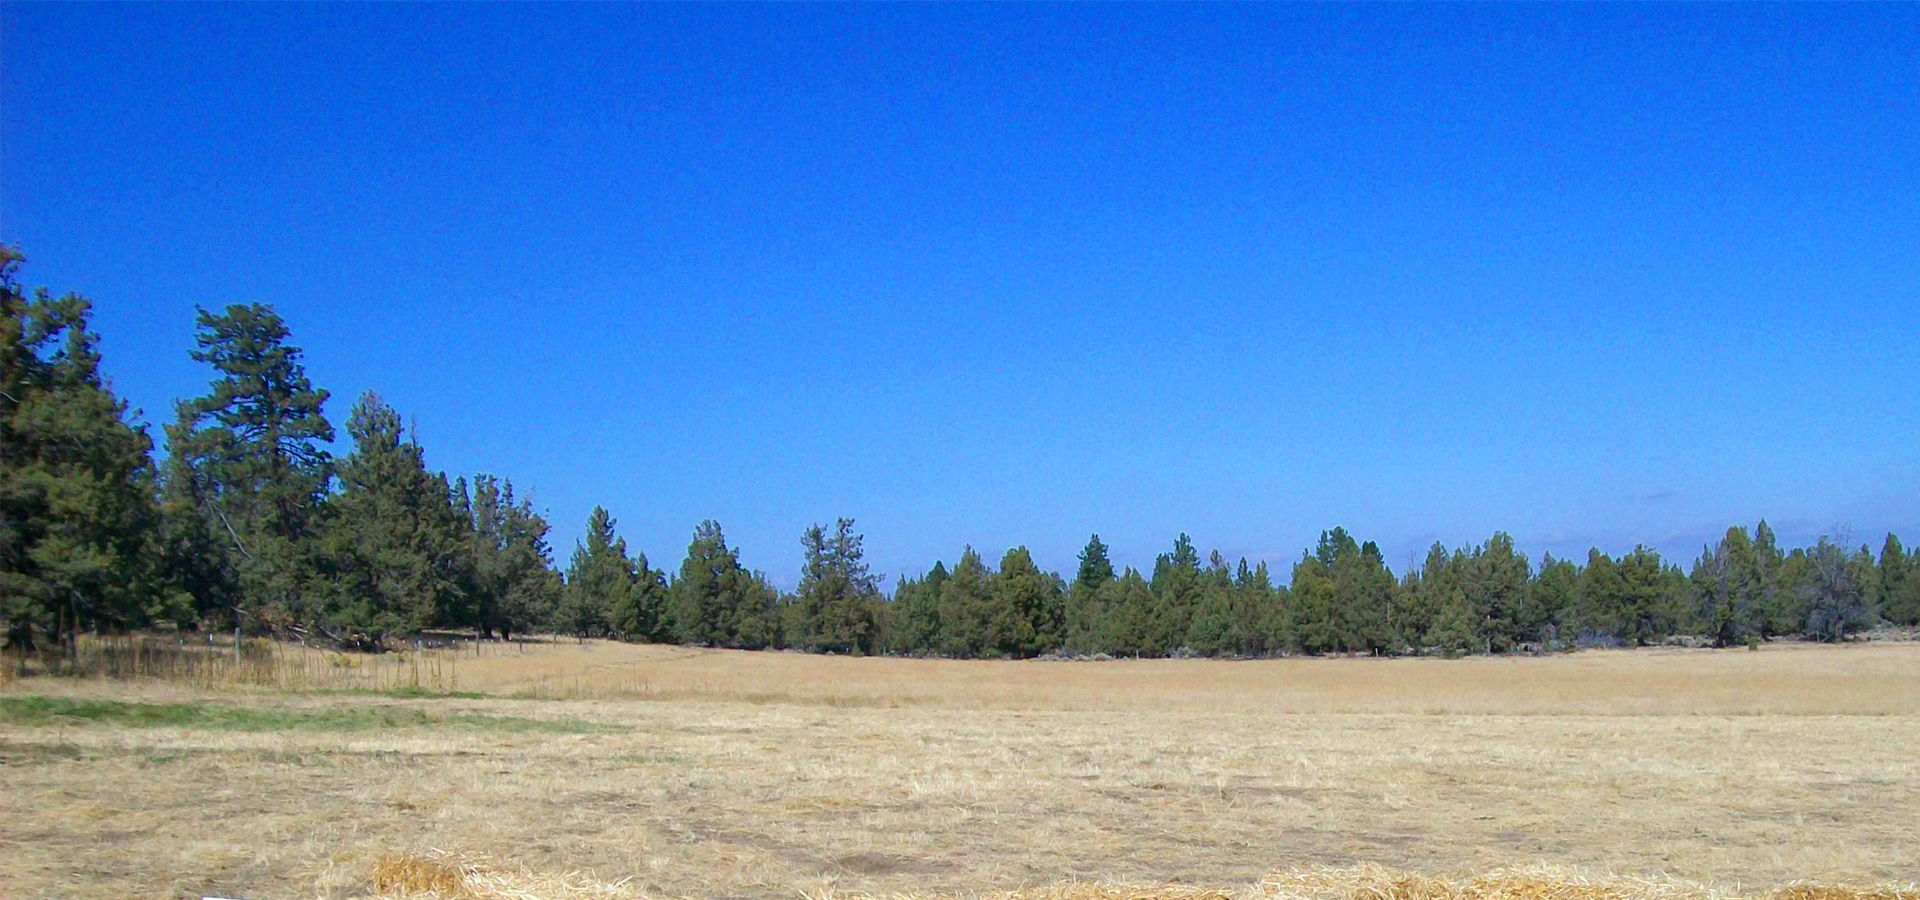 An open field at Tilicum Ranch.